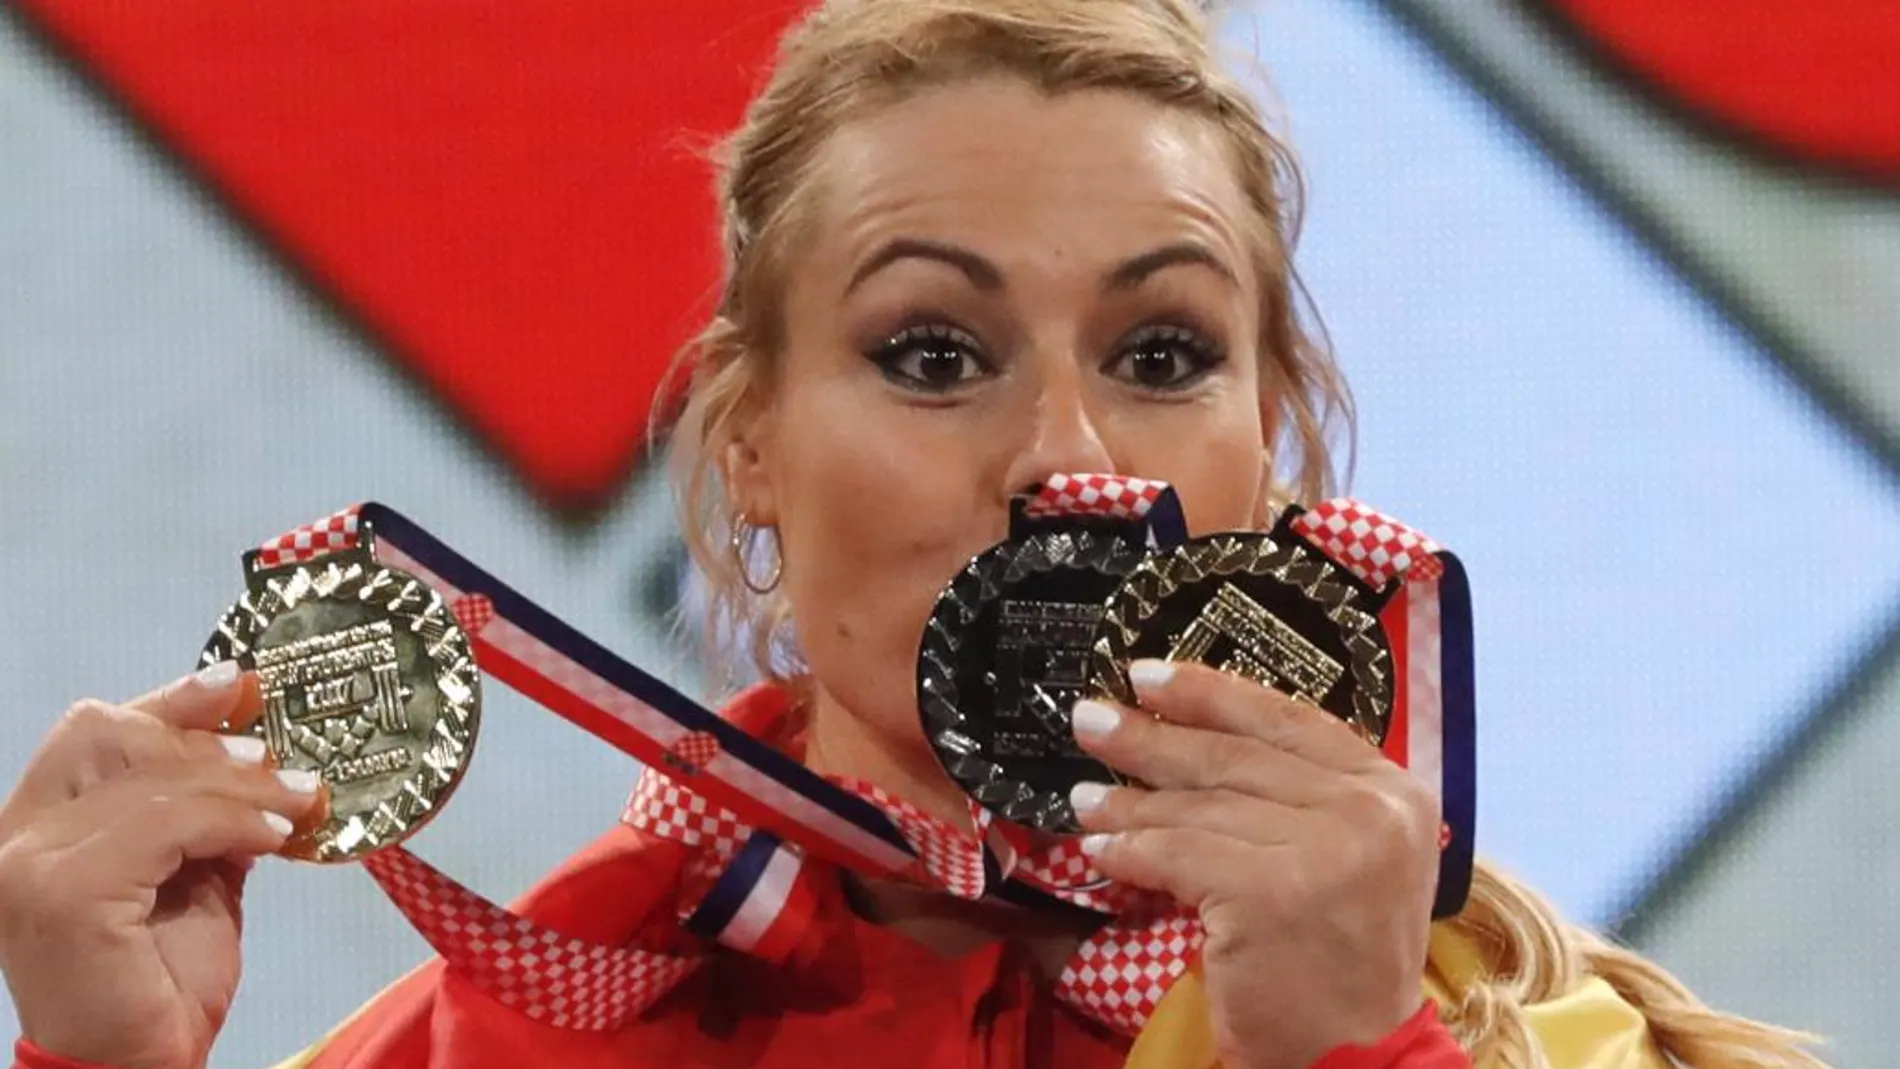 La española Lidia Valentín besa las medallas obtenidas en el podio de los Campeonatos de Europa de halterofilia